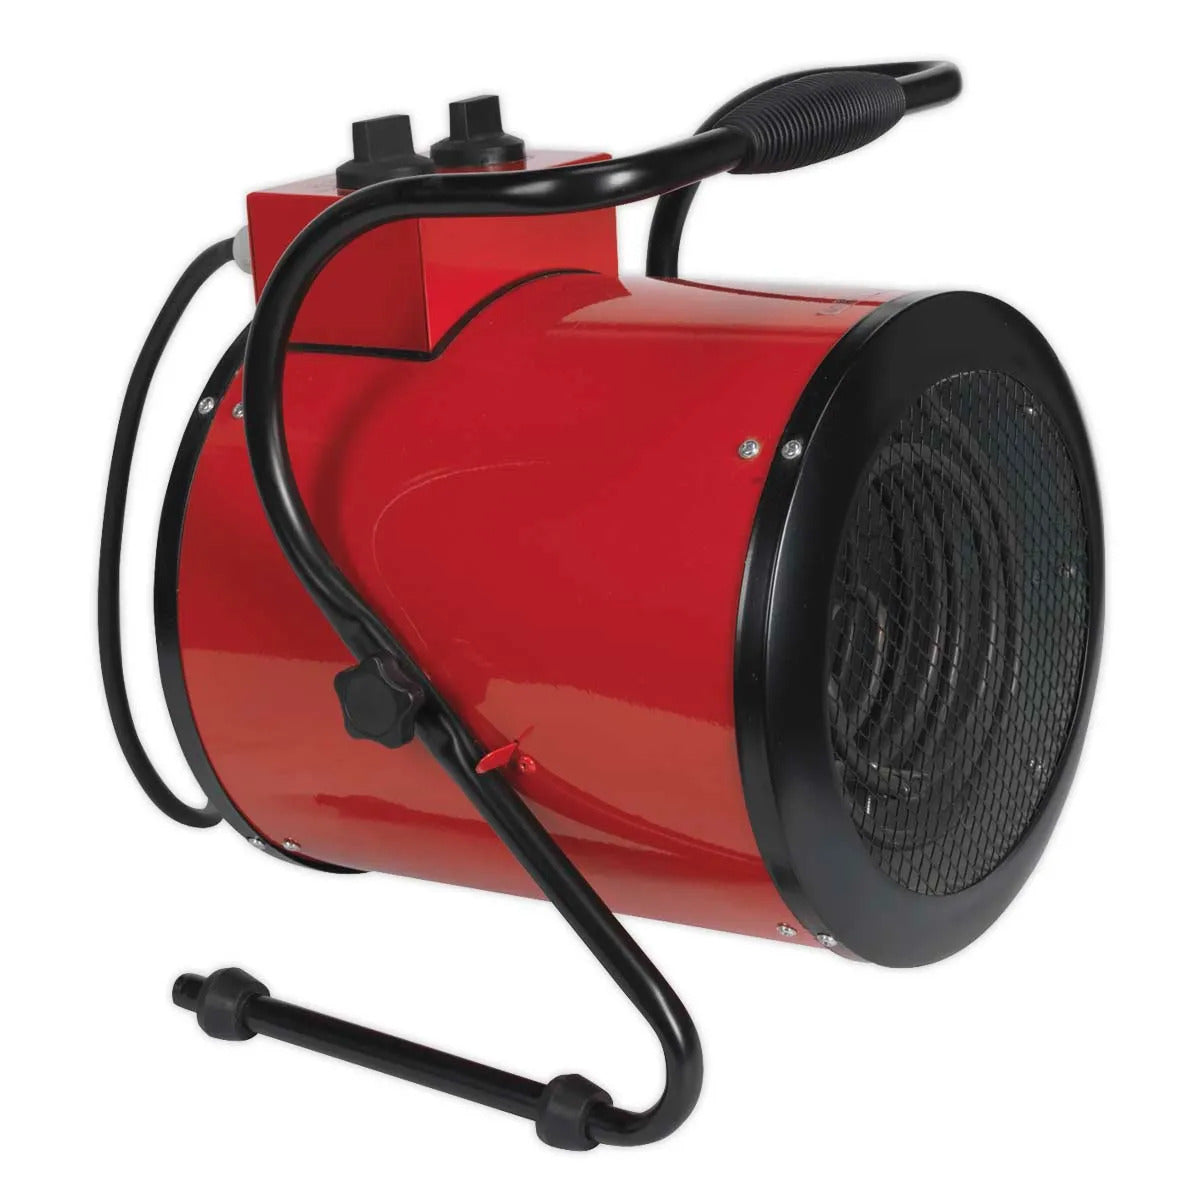 Sealey EH5001 Industrial Fan Heater 5KW/415V